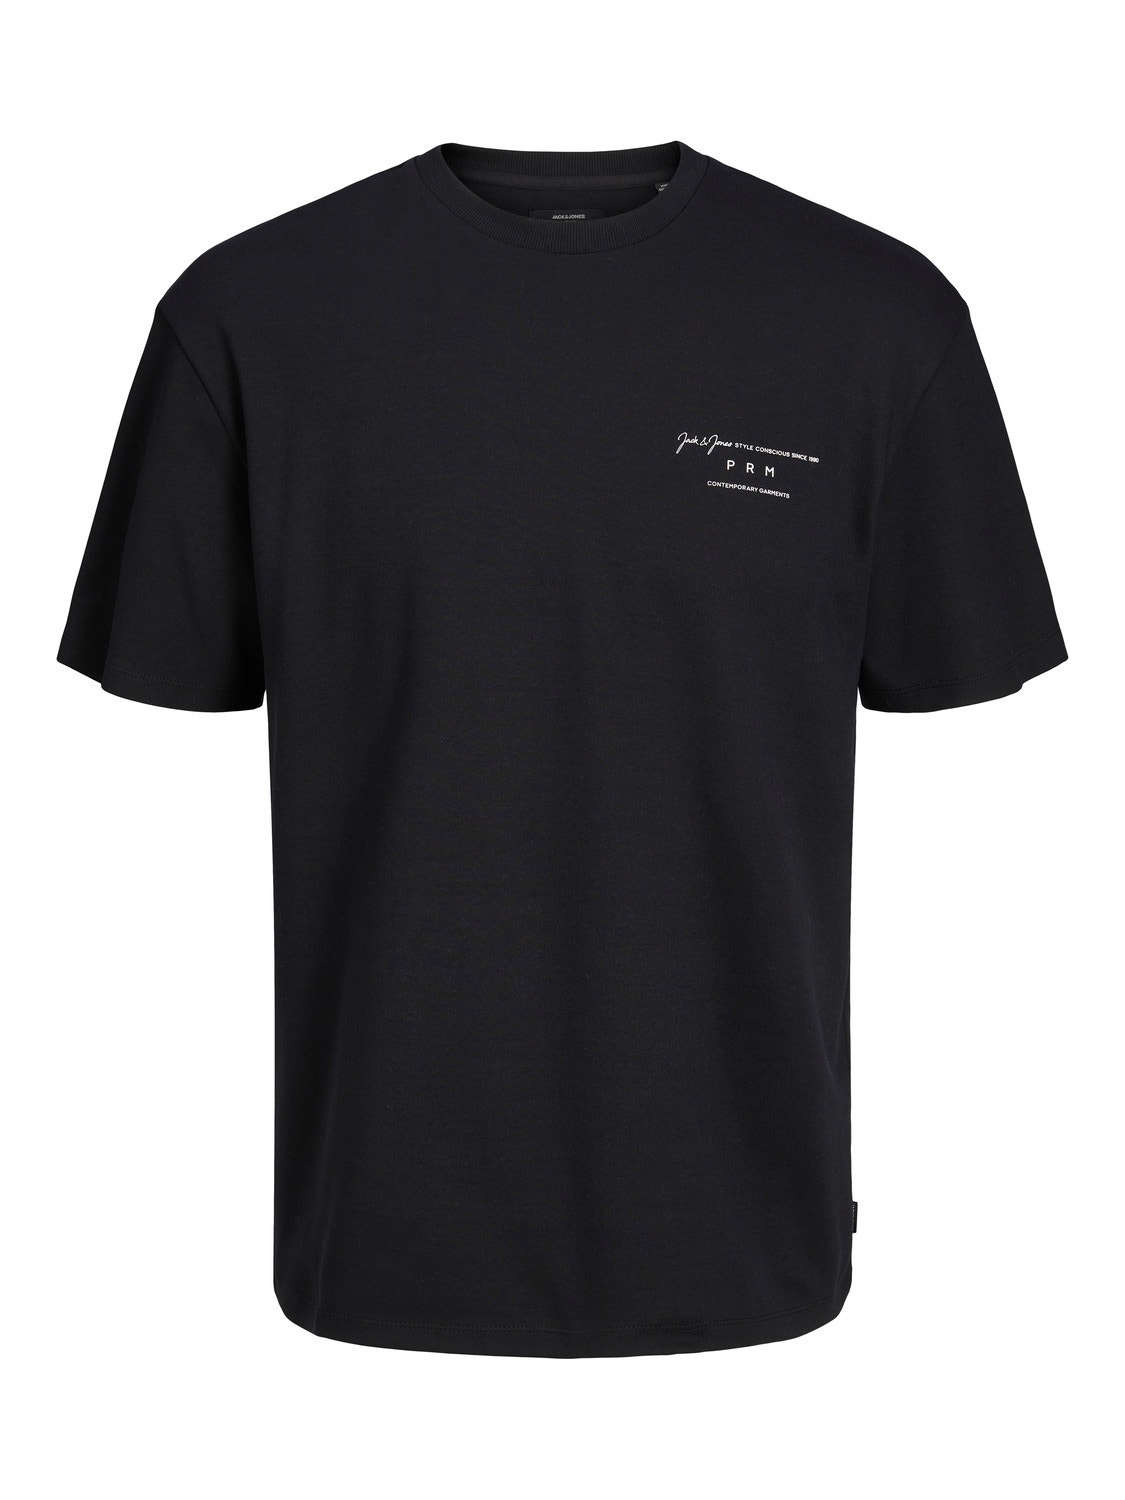 Jack & Jones T-shirt Imprimé Col rond -Black - 12245400